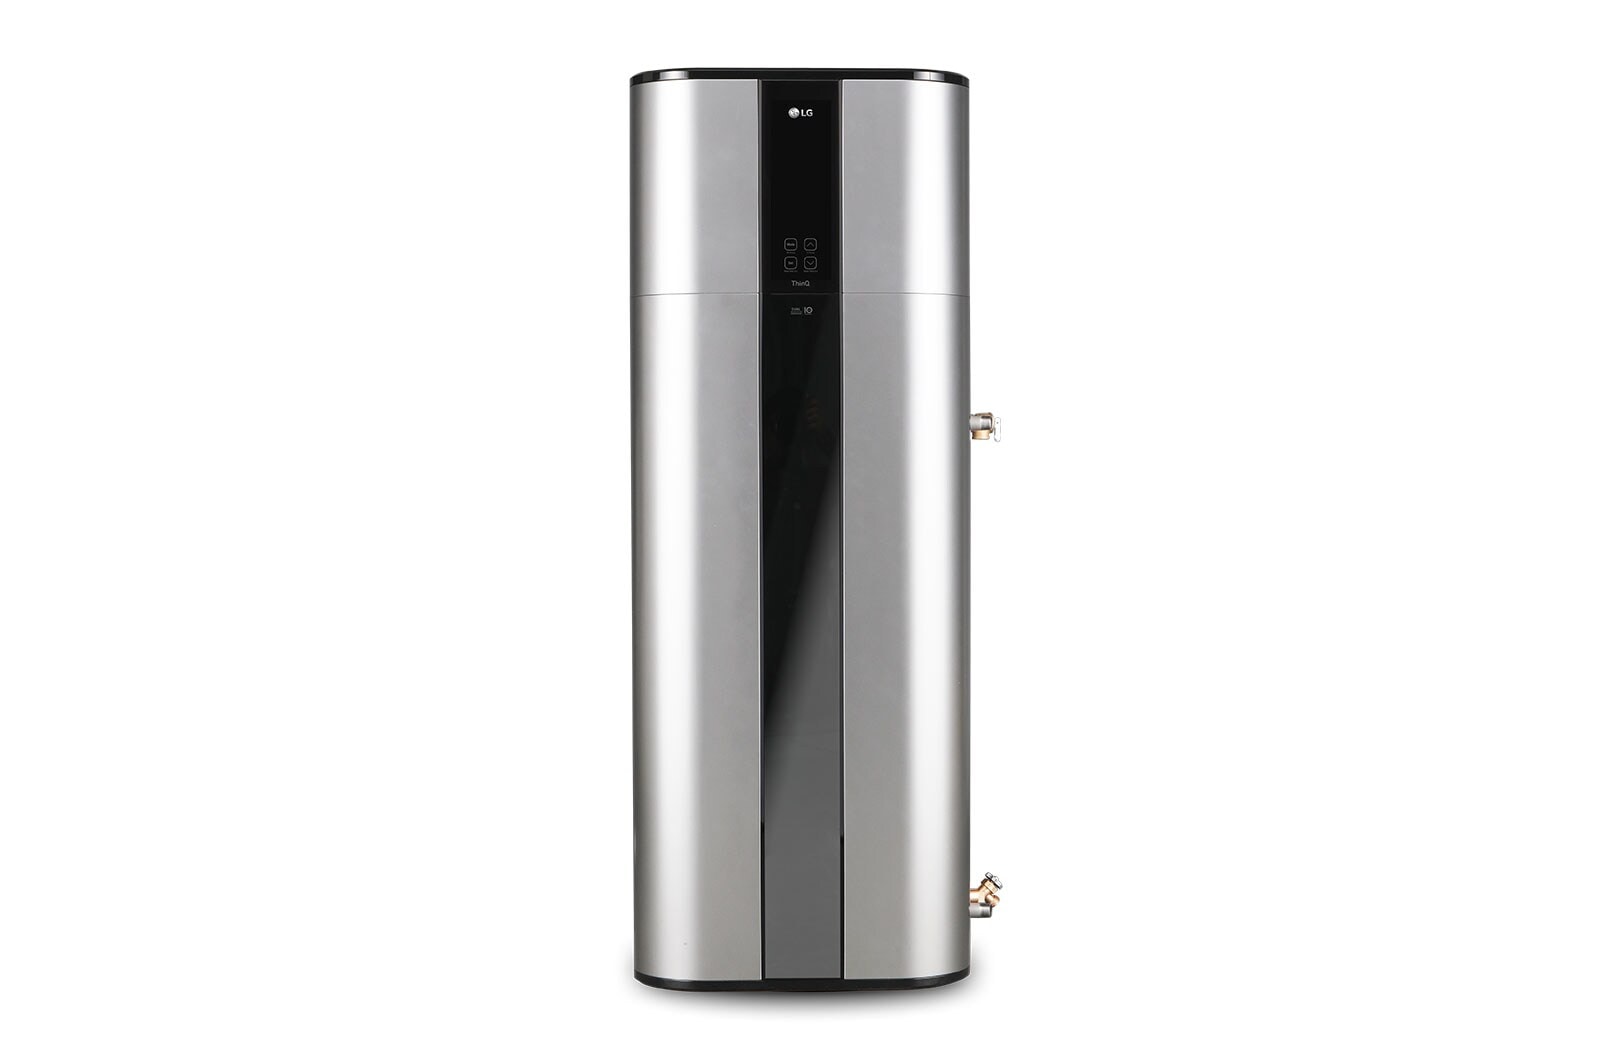 LG Bomba de Calor AQS Monobloco | Capacidade 200 litros | Wi-Fi integrado | Dual Inverter Compressor™ | Eficiência energética A +, WH20S